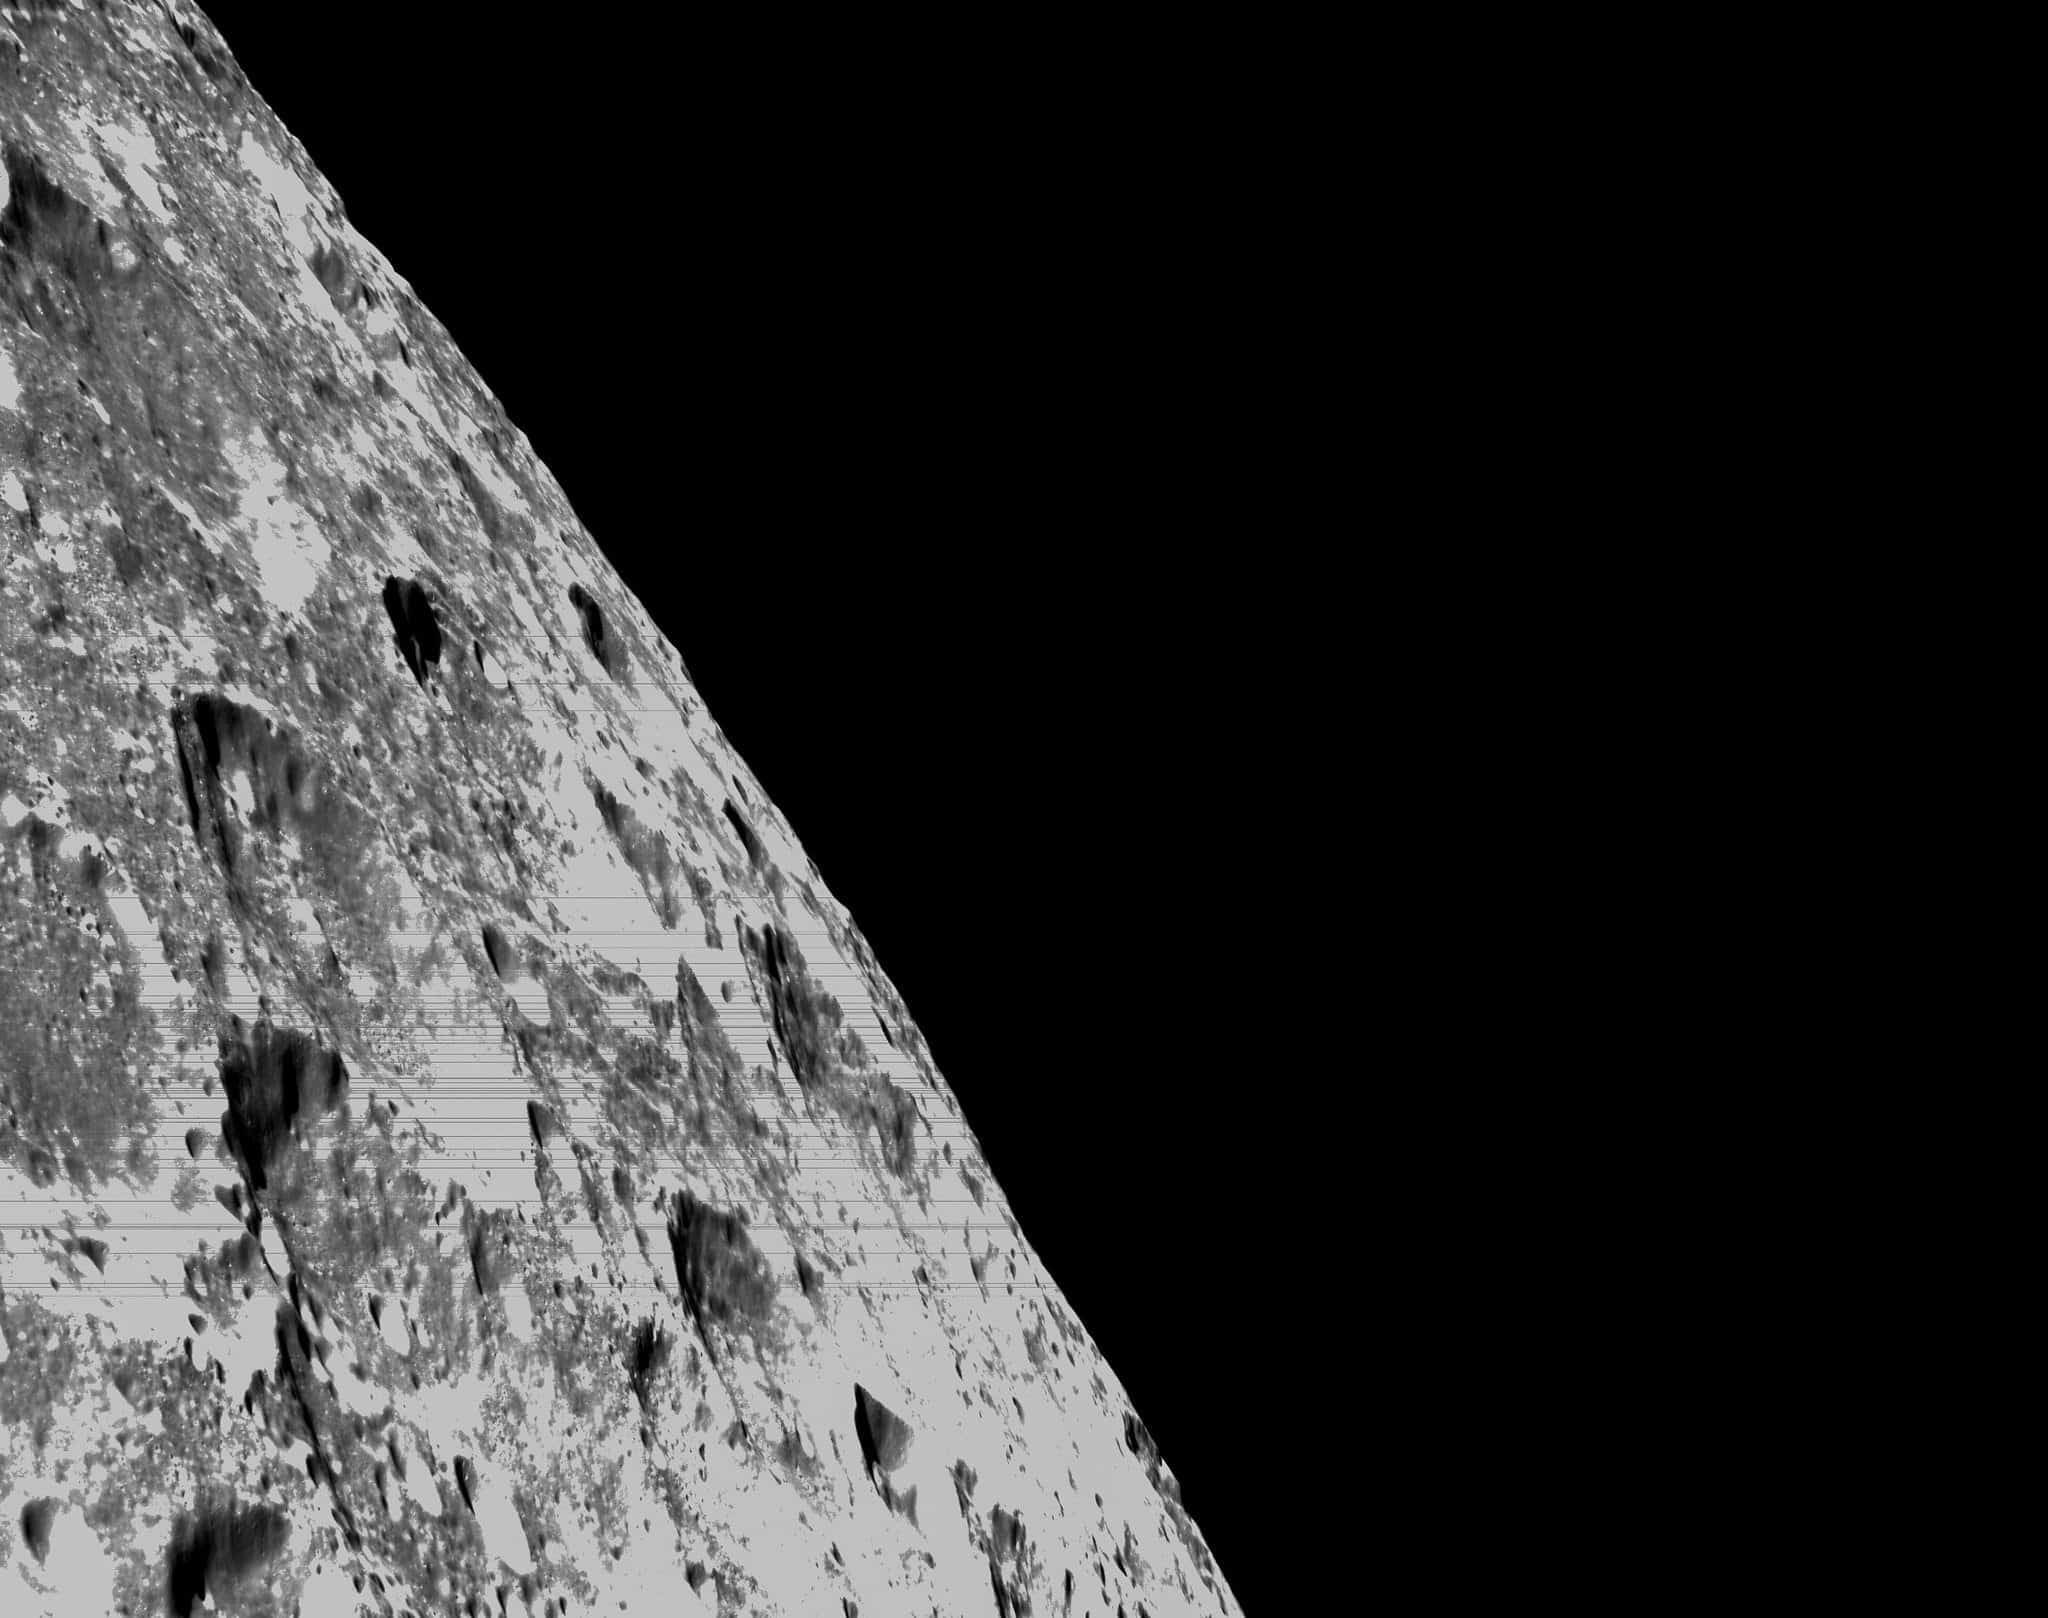 أرسلت أوريون صوراً جديدة للحفر على سطح القمر، والتي يُحتمل أن تحتوي على الماء والجليد.